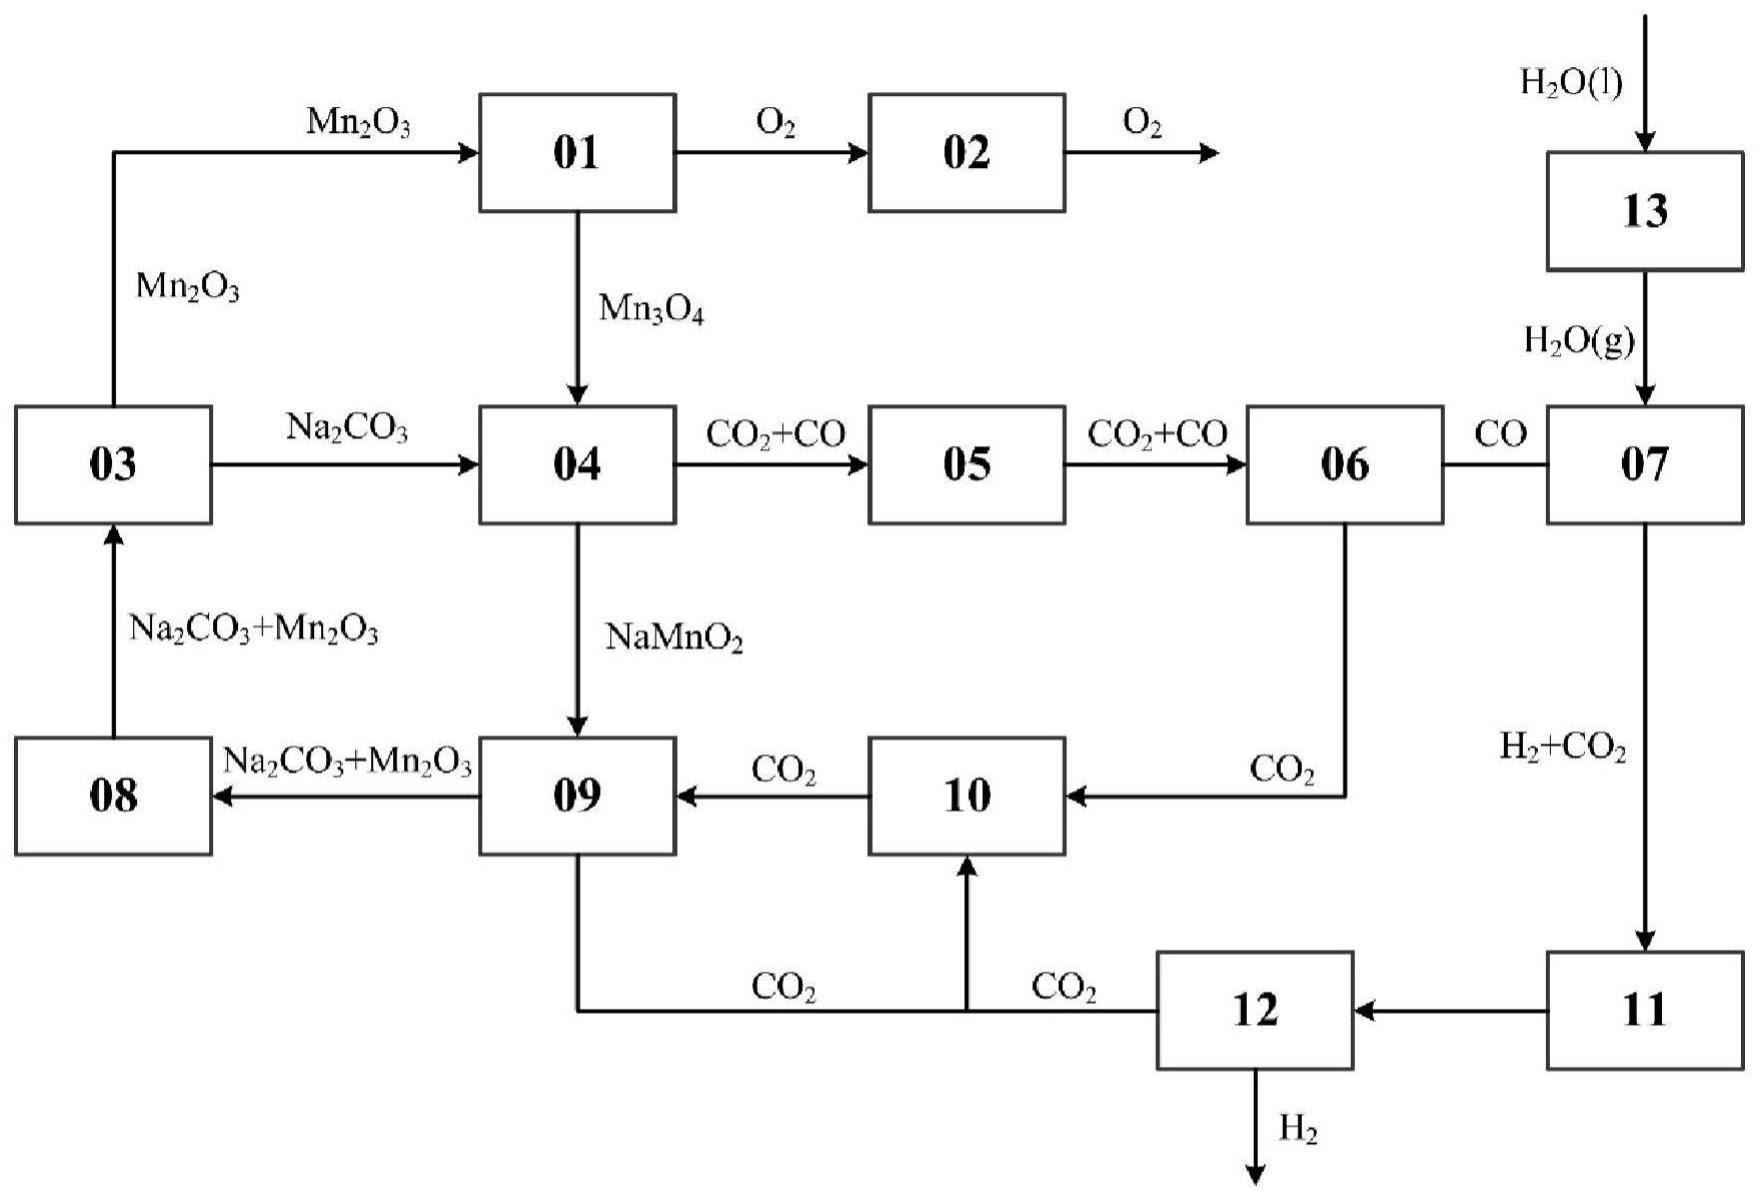 锰氧化物与碳酸盐的热化学循环分解水制氢方法及装置